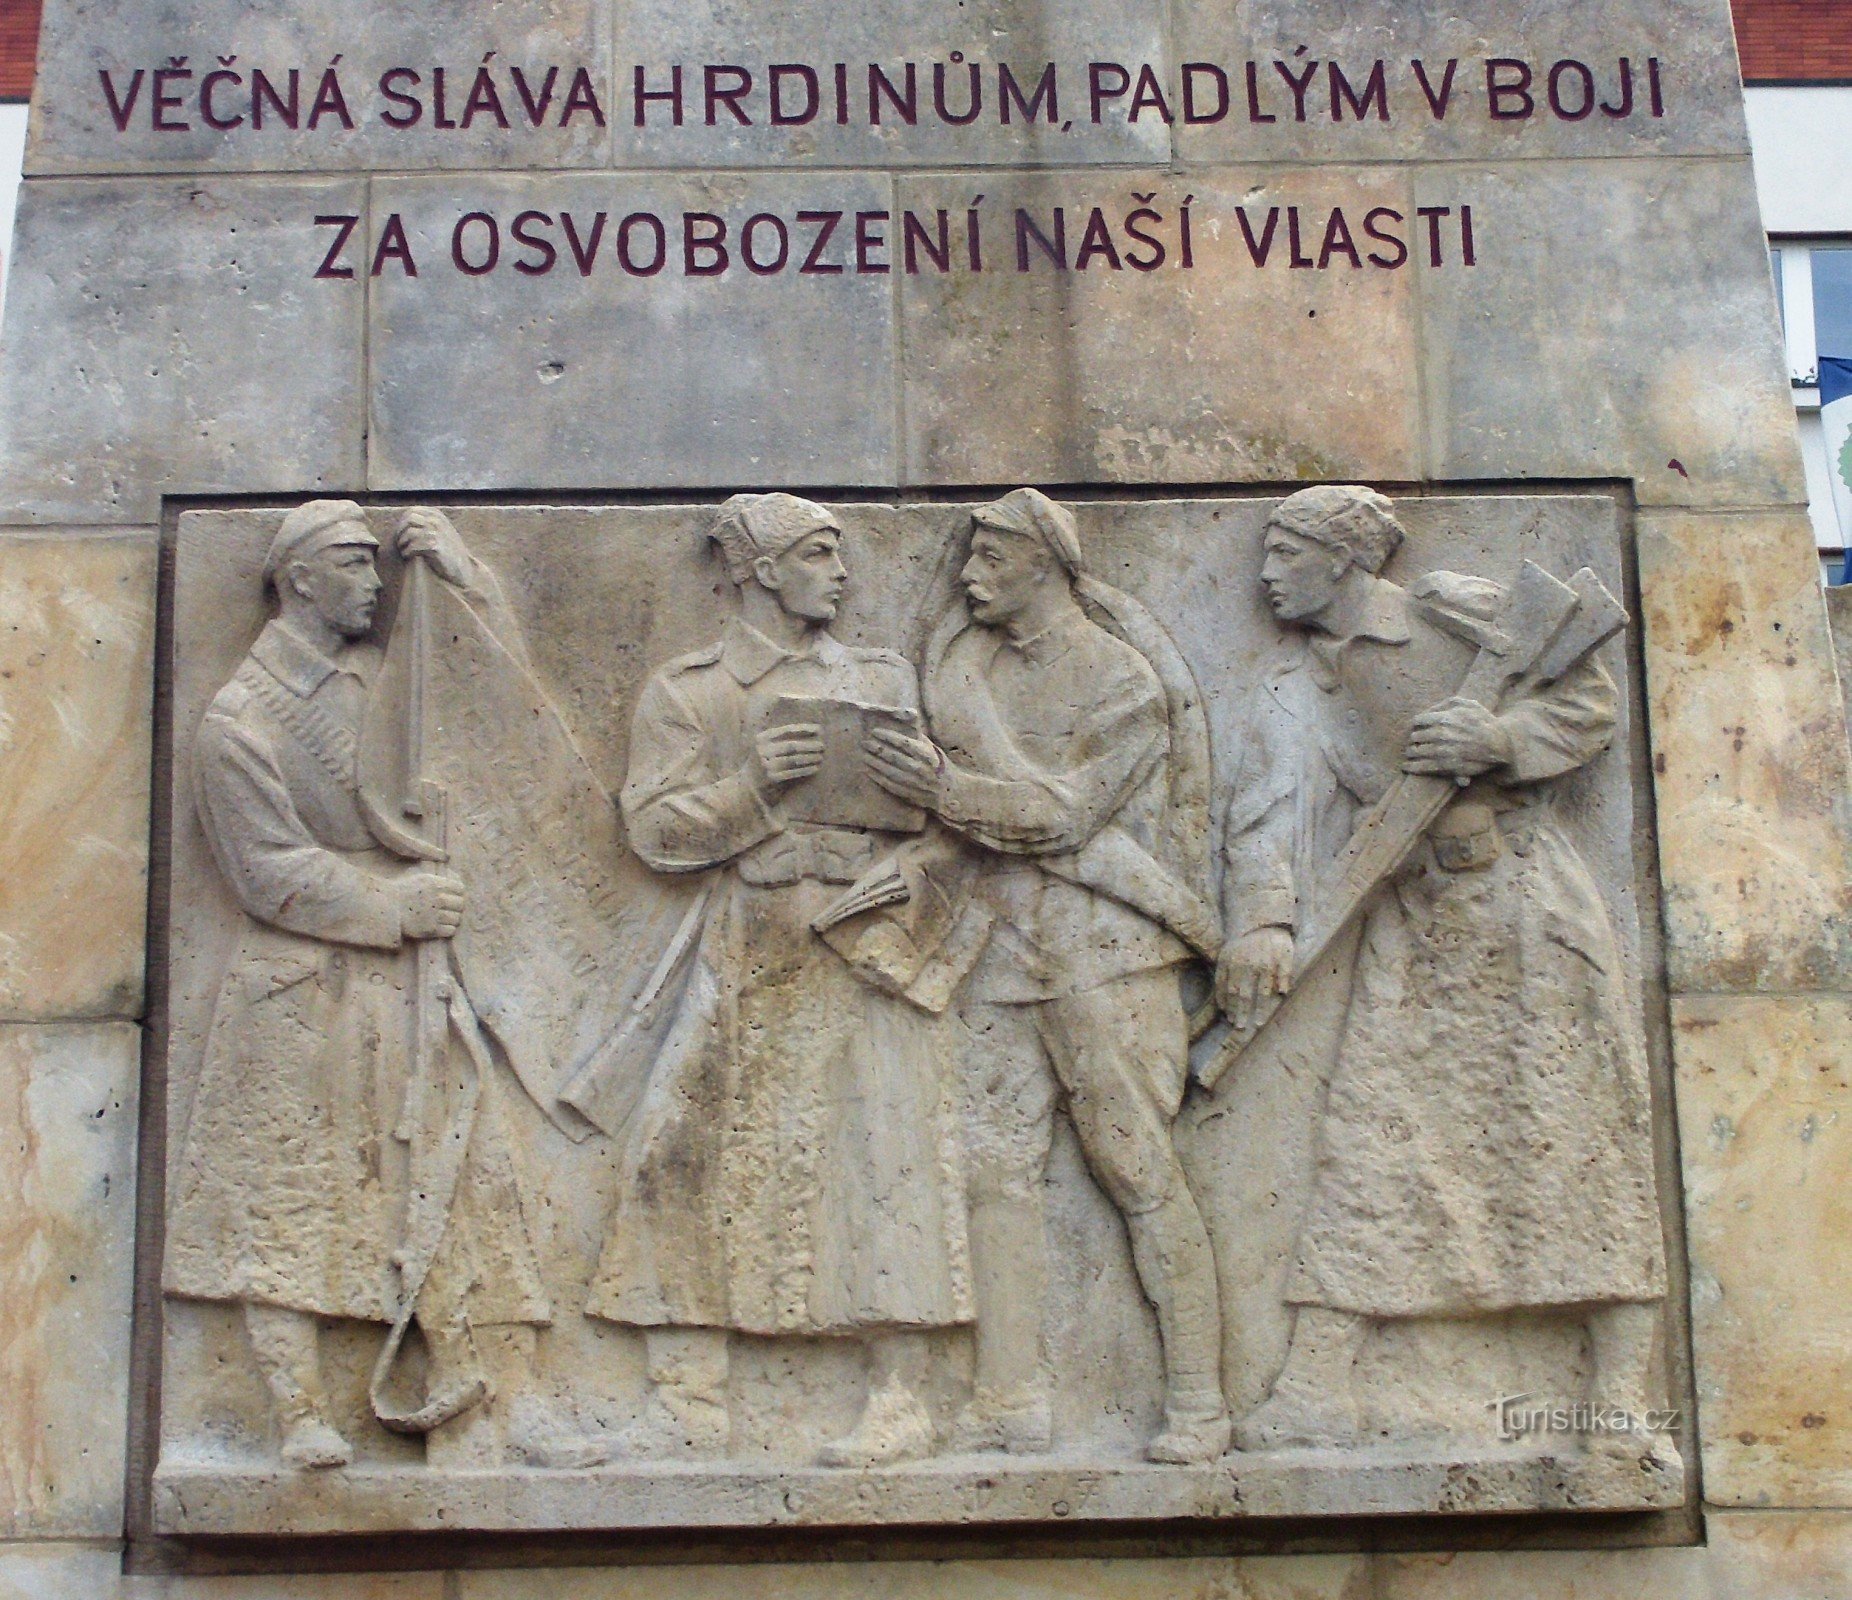 Luhačovice - monument